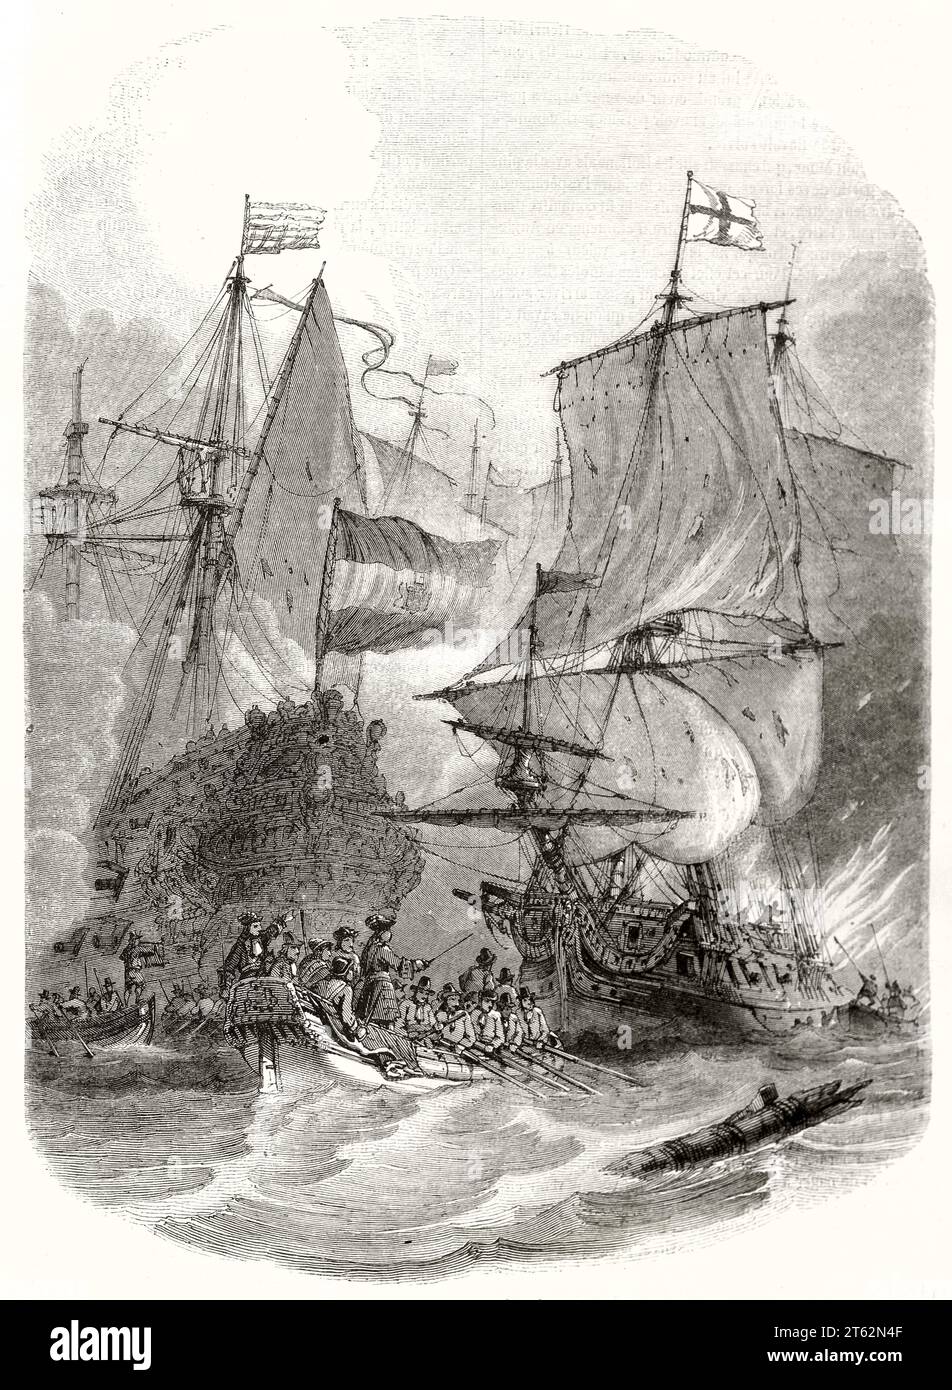 Alte Illustration eines englischen Feuerschiffs. Von Morel-Fatio, publ. Auf Magasin Pittoresque, Paris, 1849 Stockfoto